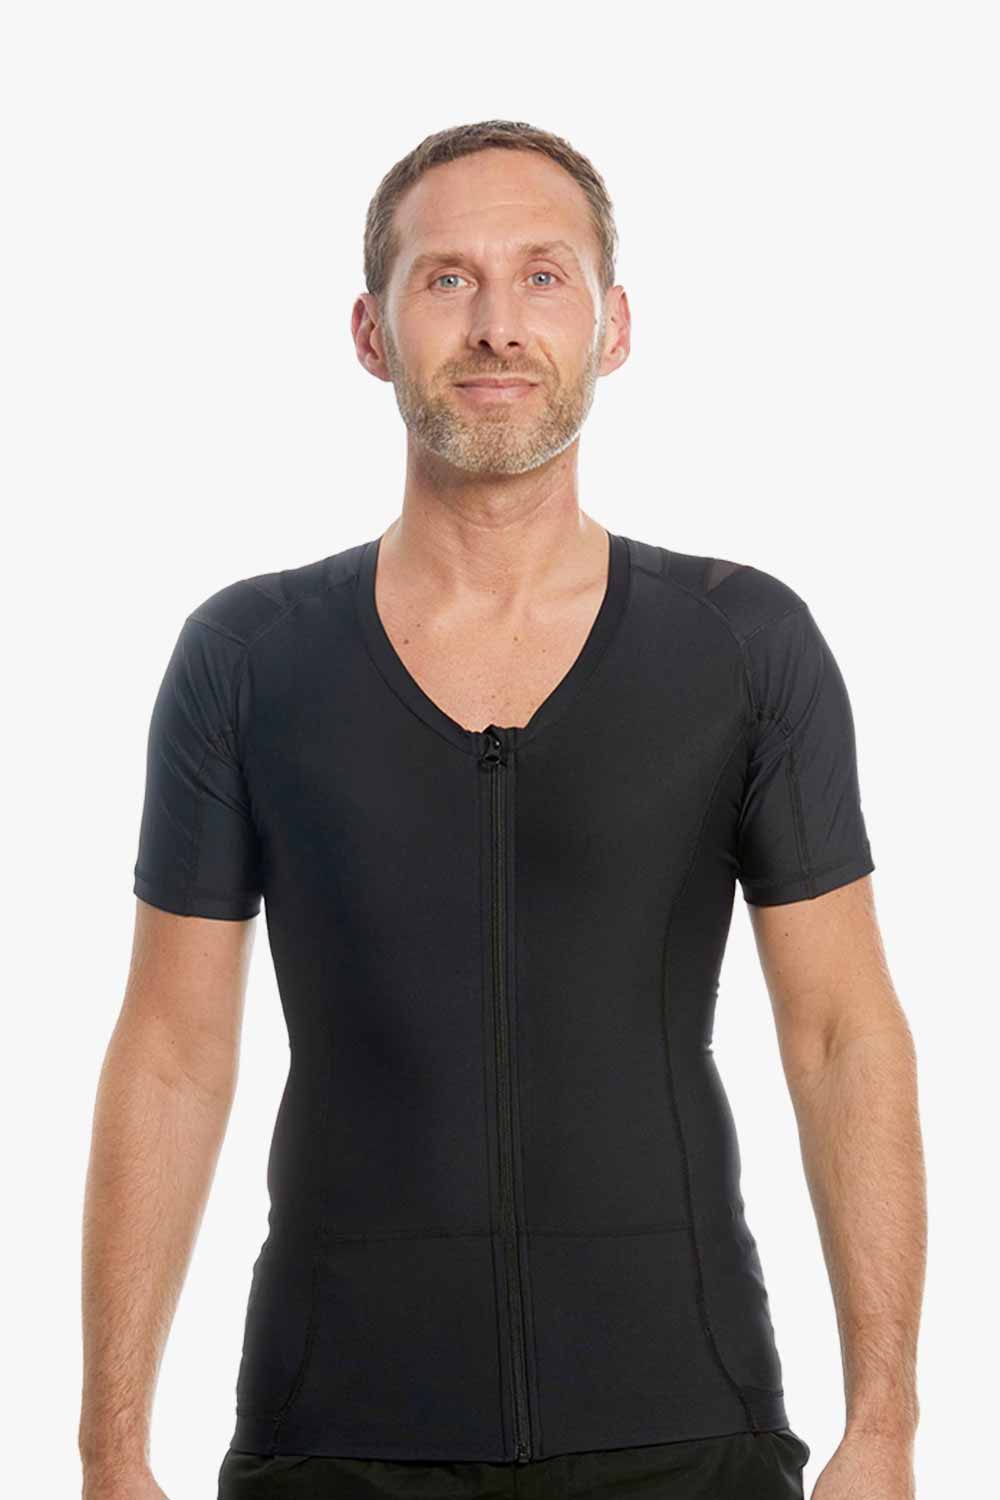 zwart posture shirt met rits voor mannen